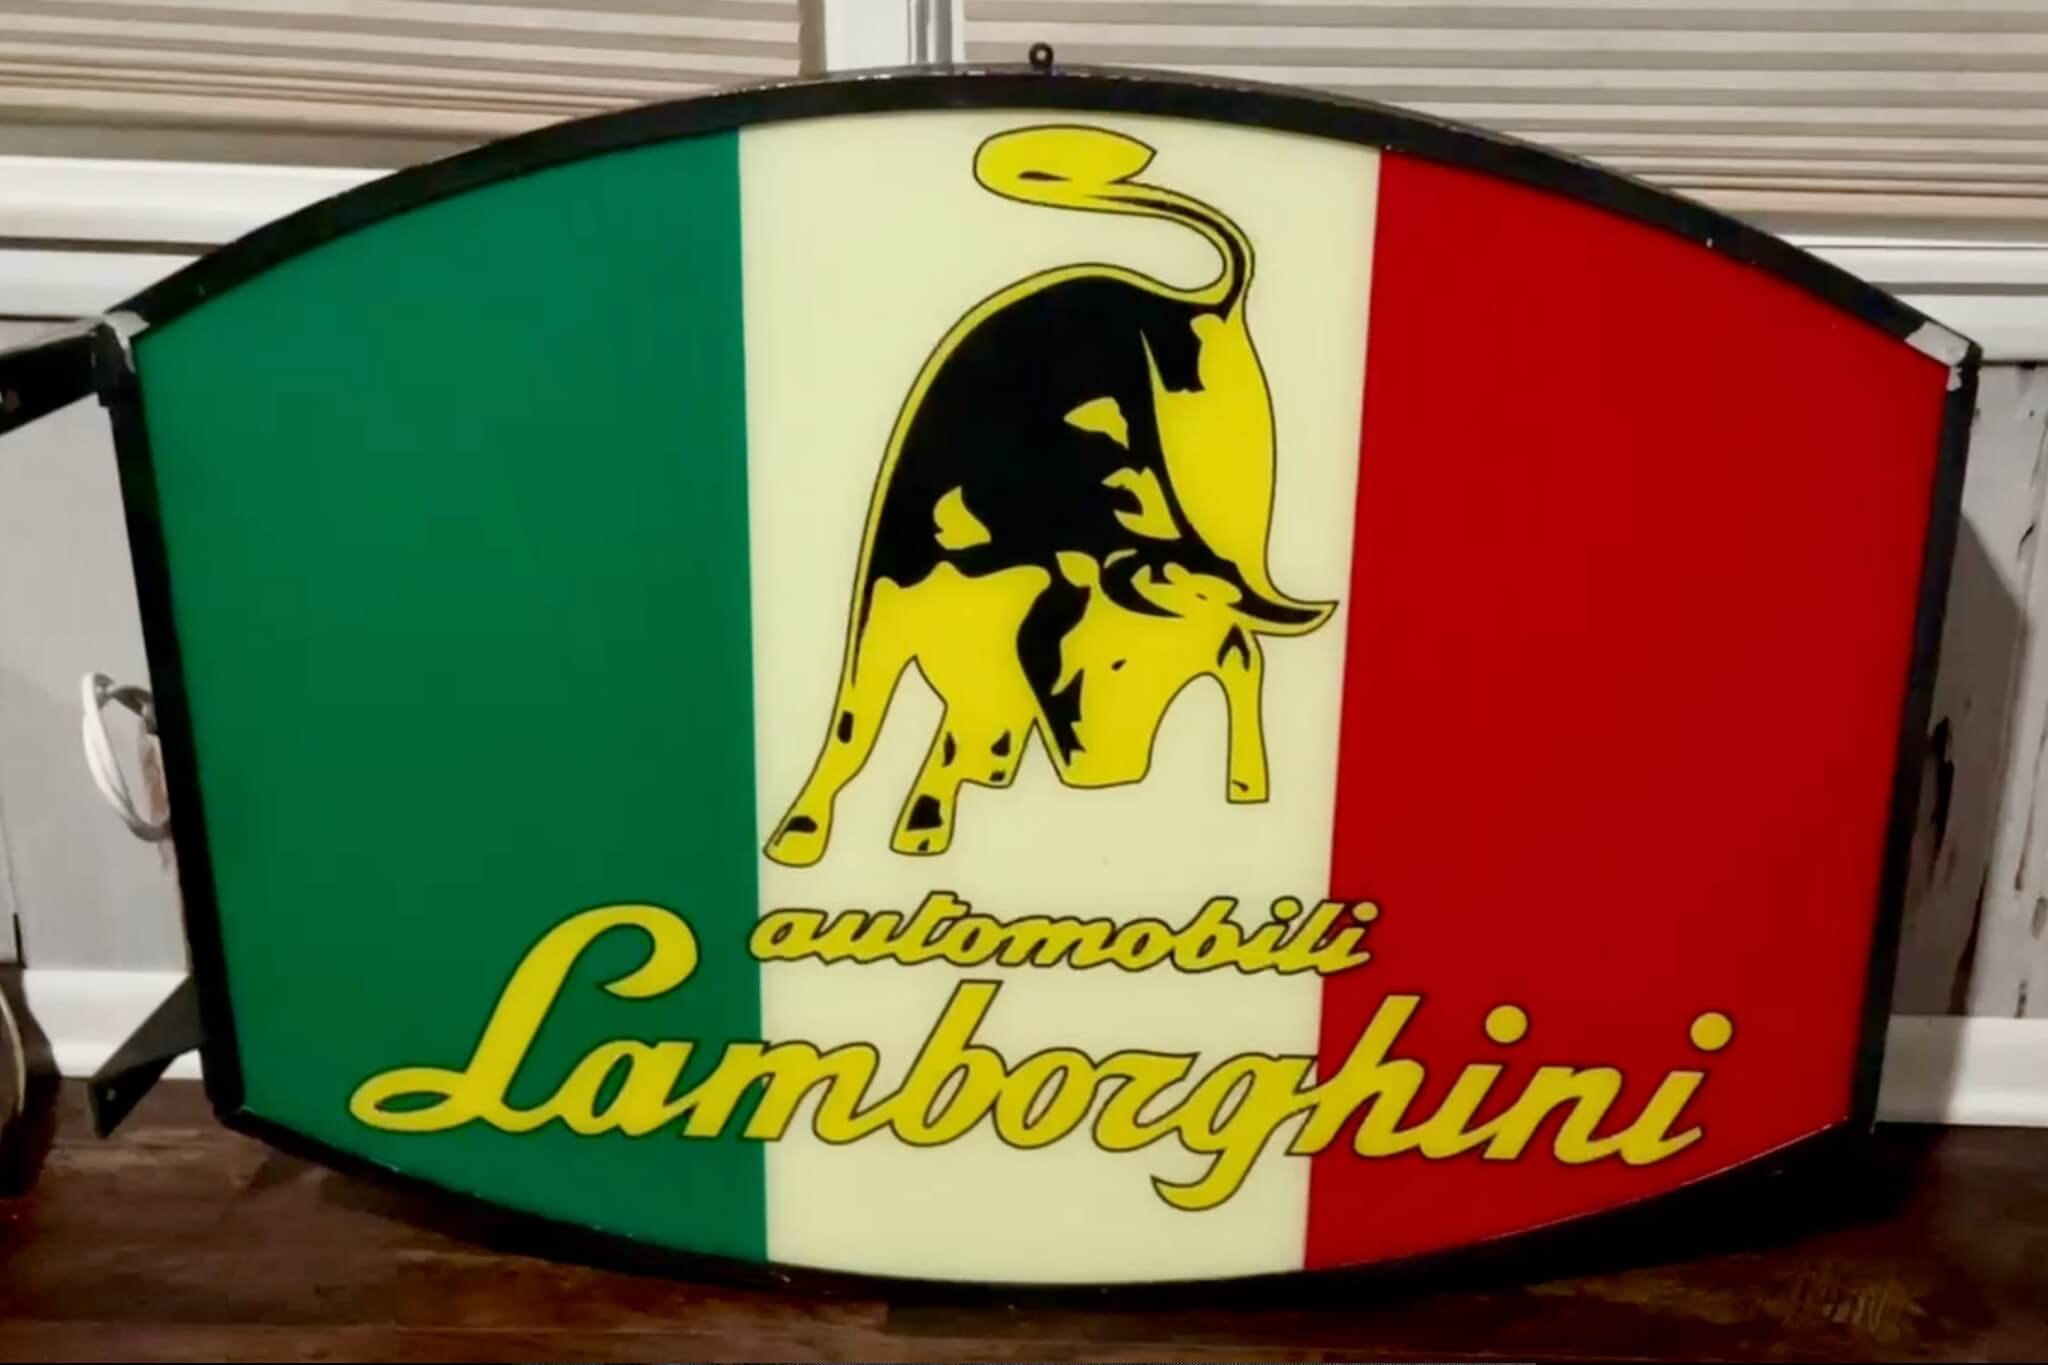 DT: Illuminated Double-sided Lamborghini Sign (43 1/2" x 29" x 3 1/8")